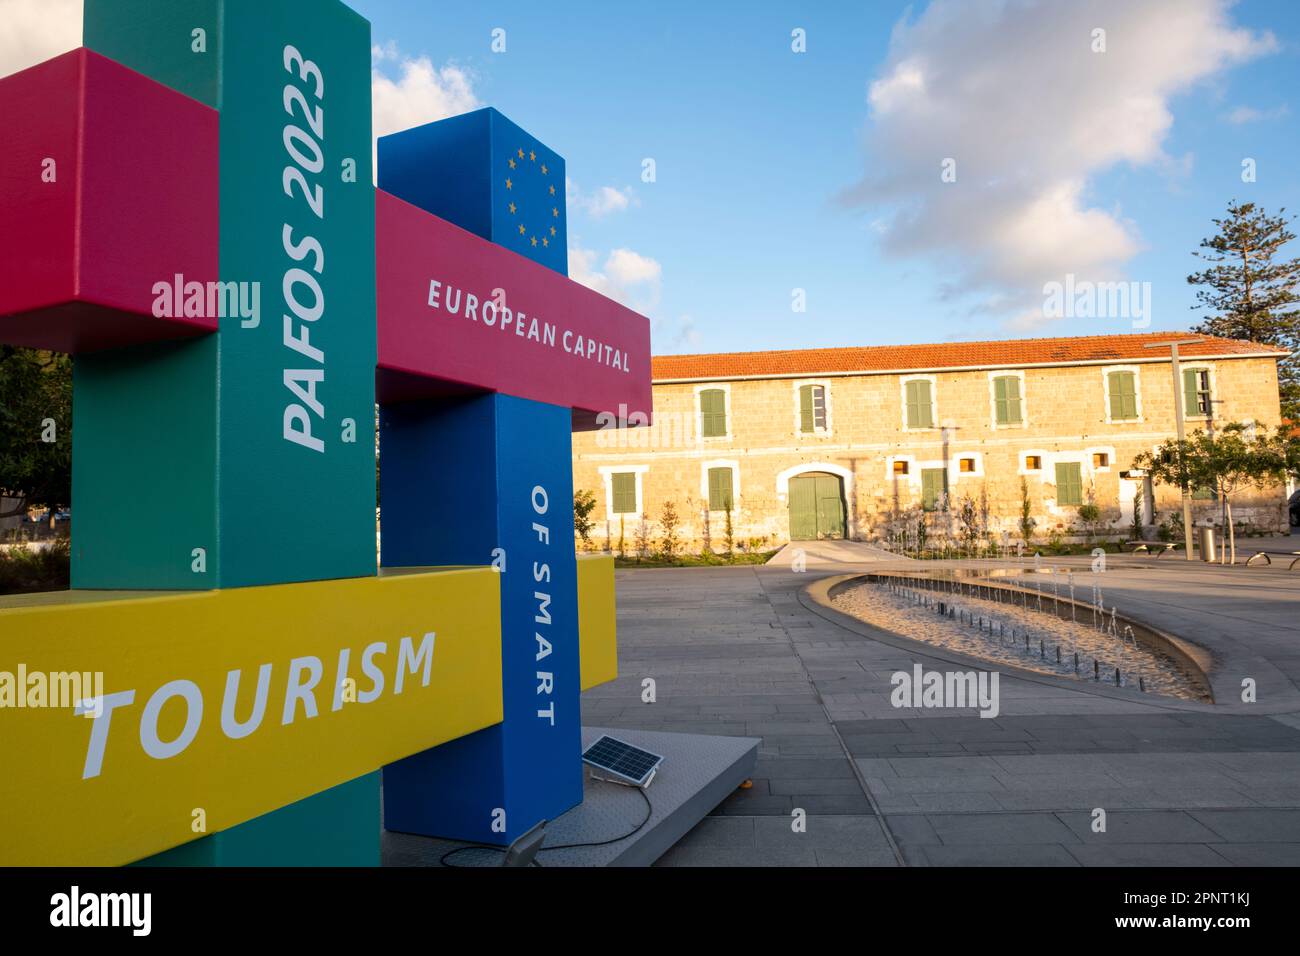 Logo der europäischen Hauptstadt des intelligenten Tourismus von Pafos 2023, Kennedy Square, Altstadt von Pafos (Ktima), Zypern. Stockfoto